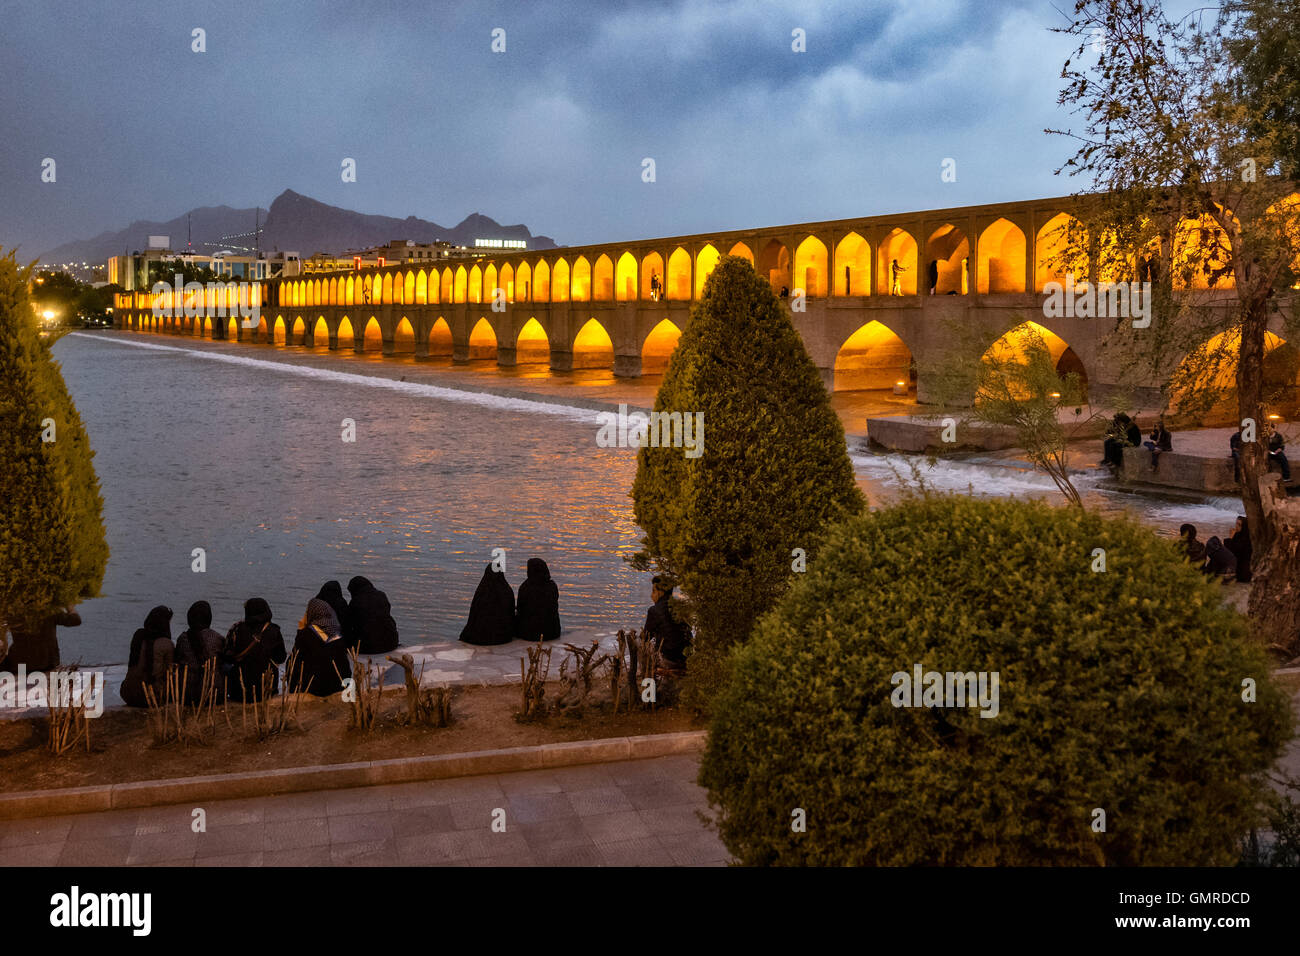 Les femmes portant tchador sur les rives de la rivière Zayandeh. Allāhverdi Khan populairement connu sous le nom de pont Si-O-seh pol "Le pont de trente-trois travées" est l'un des 11 ponts d'Isfahan, Iran et le plus long pont sur la rivière Zayandeh avec la longueur totale de 297,76 mètres (976,9 pieds). Il est hautement classé comme étant l'un des exemples les plus célèbres de la conception de ponts safavides. Banque D'Images